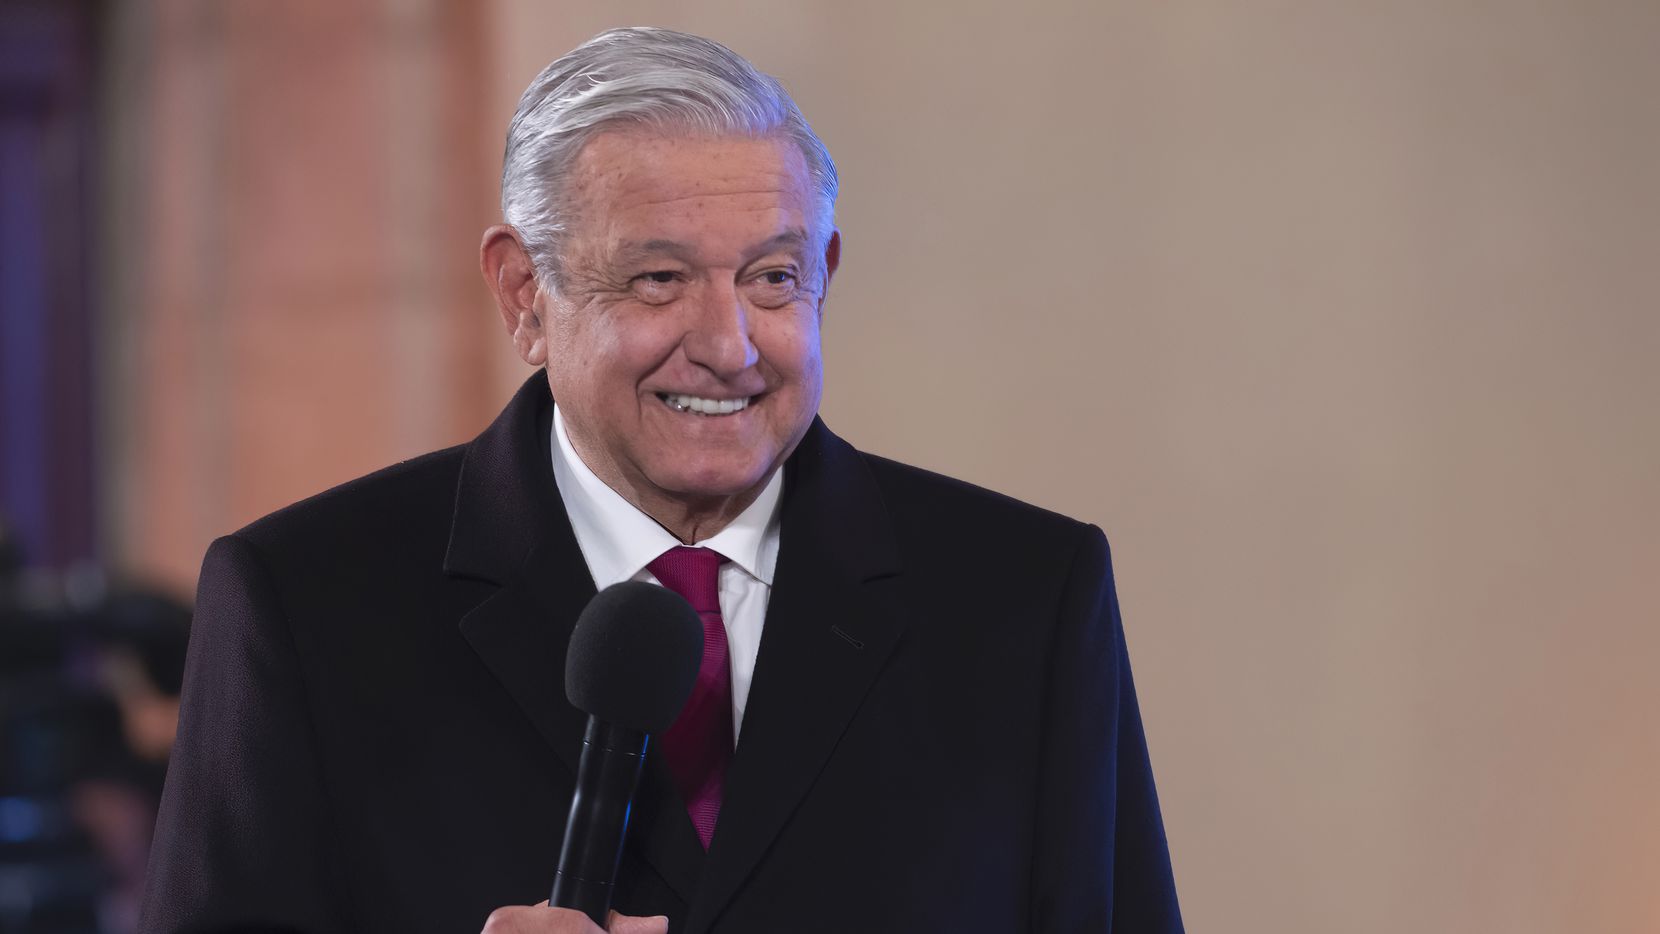 El presidente de México, Andrés Manuel López Obrador, se presentó la mañana de este lunes a su conferencia de prensa en Palacio Nacional con algunos síntomas, a los que se refirió como un resfriado.